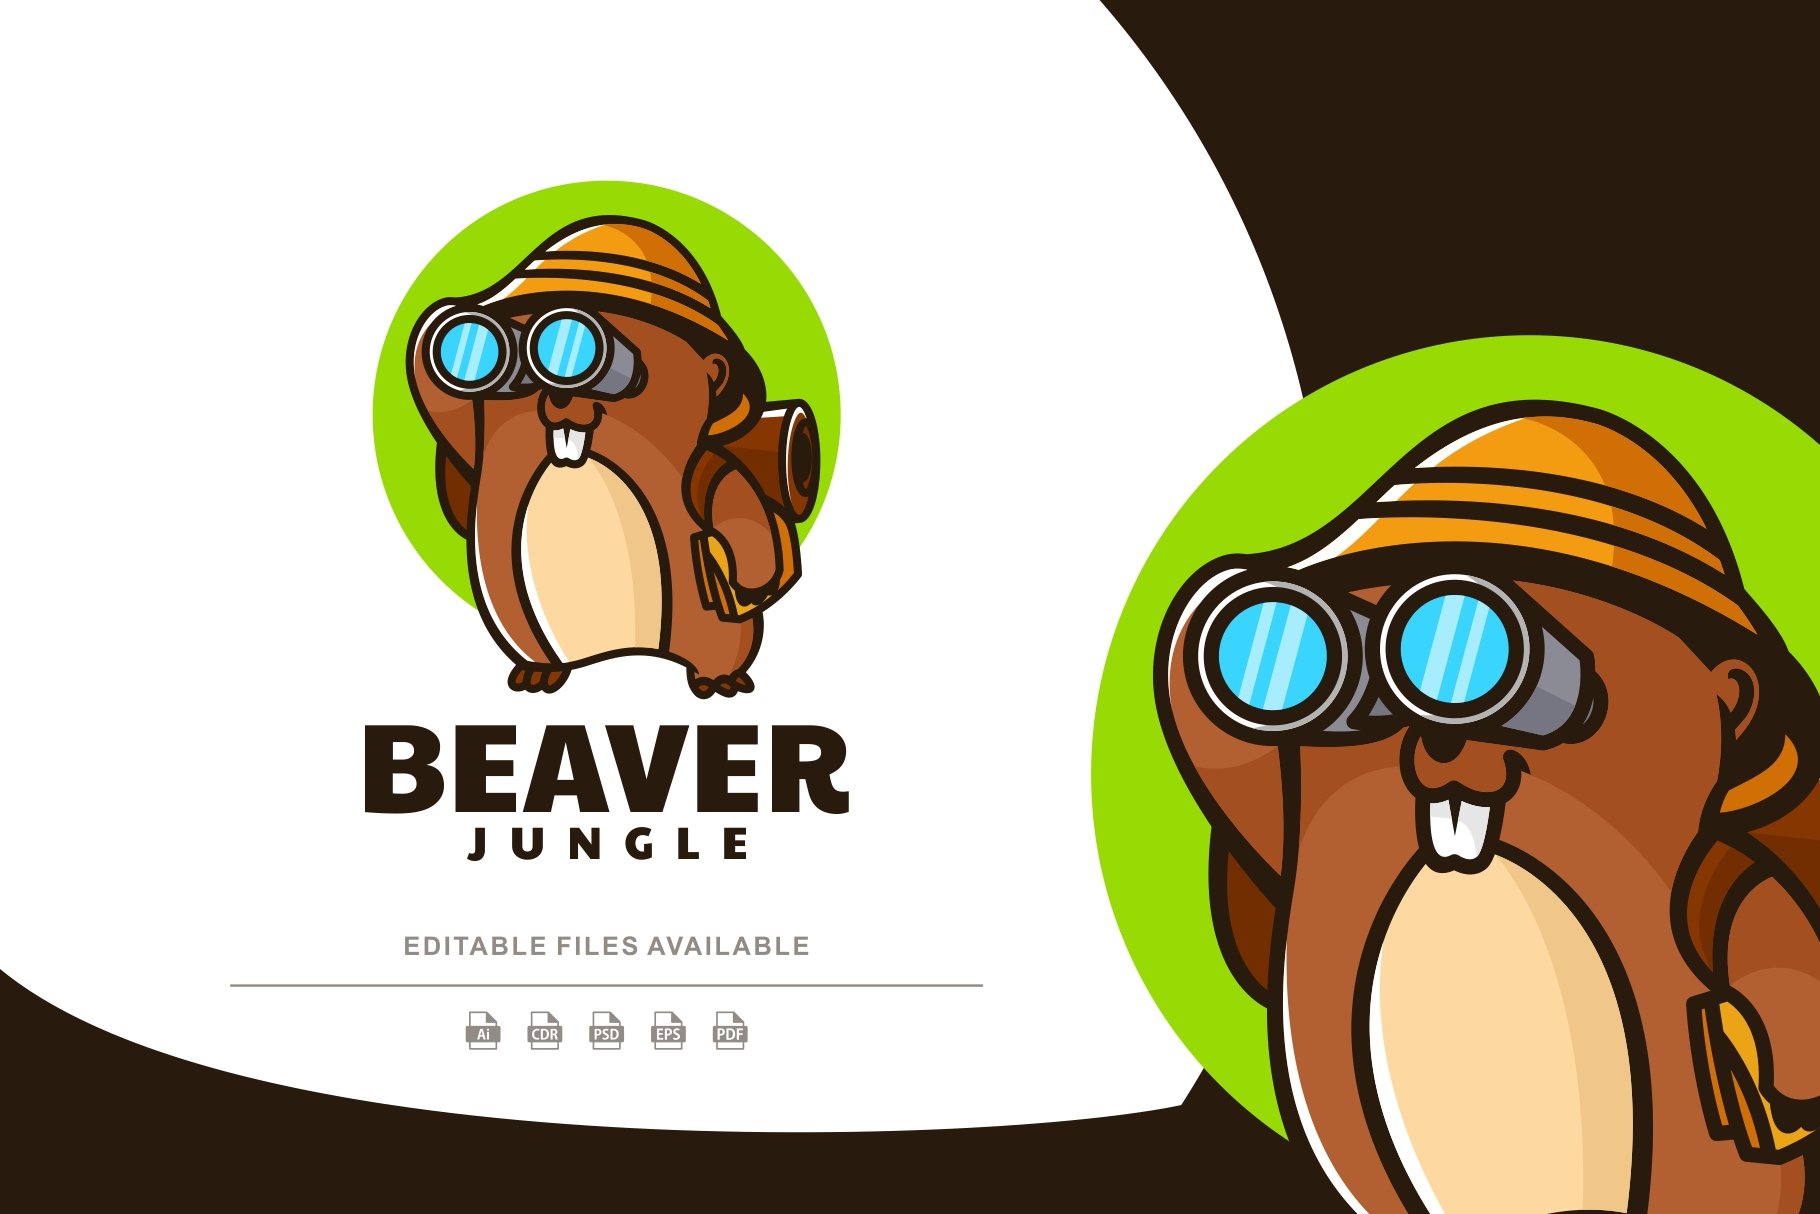 Beaver Explorer Mascot Cartoon Logo cover image.